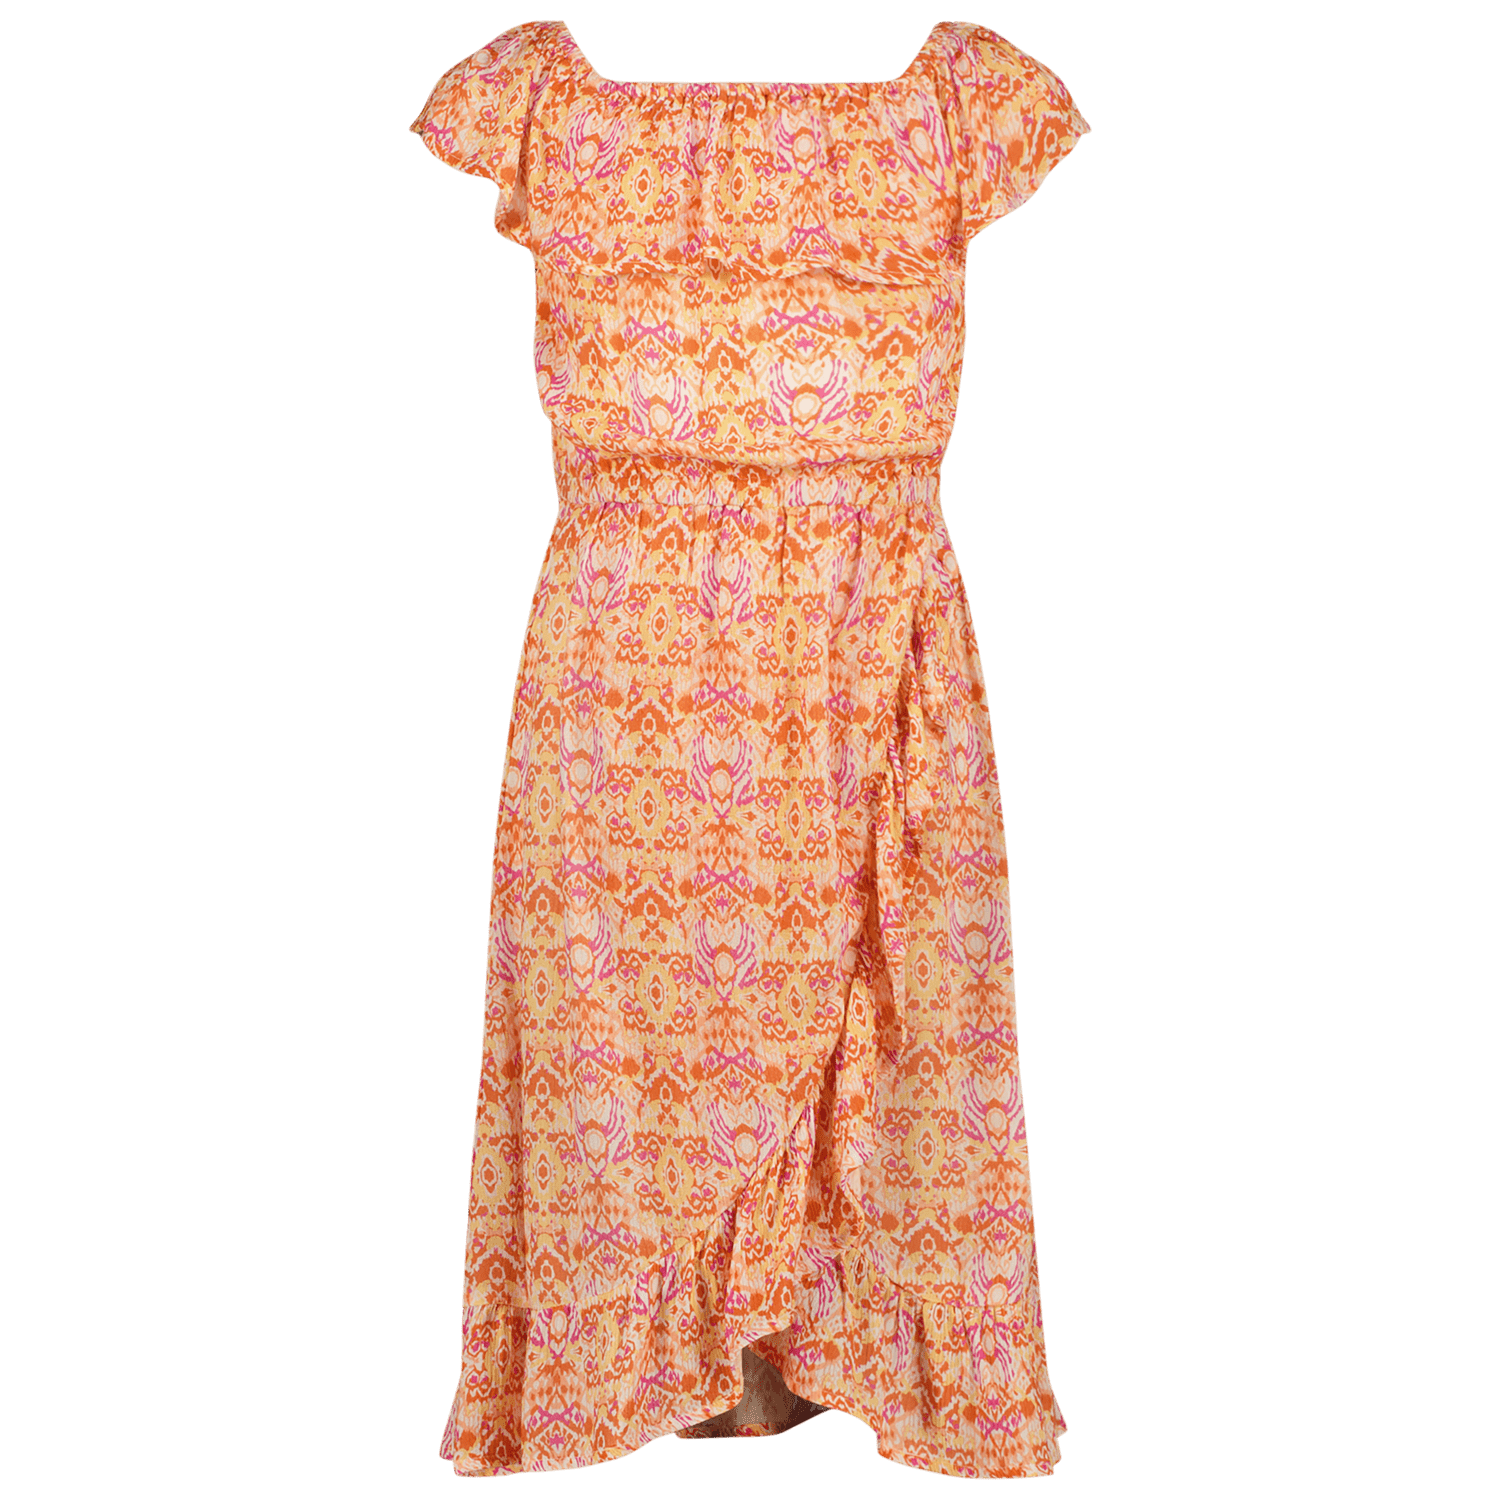 VINGINO off shoulder jurk Peninah met all over print en volant oranje roze geel 140